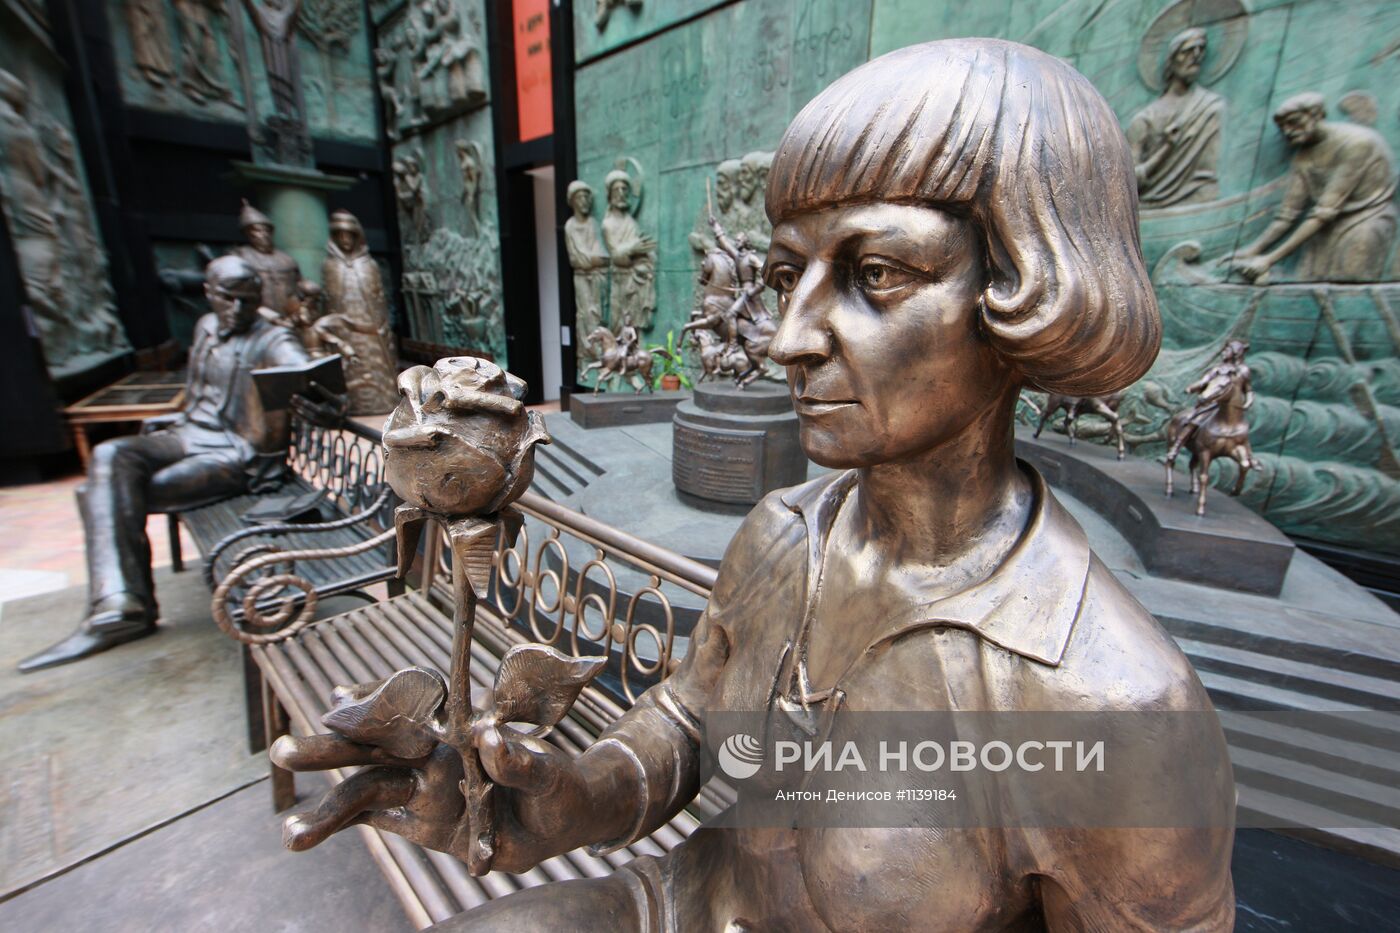 Зураб Церетели представил в Москве памятник Марине Цветаевой